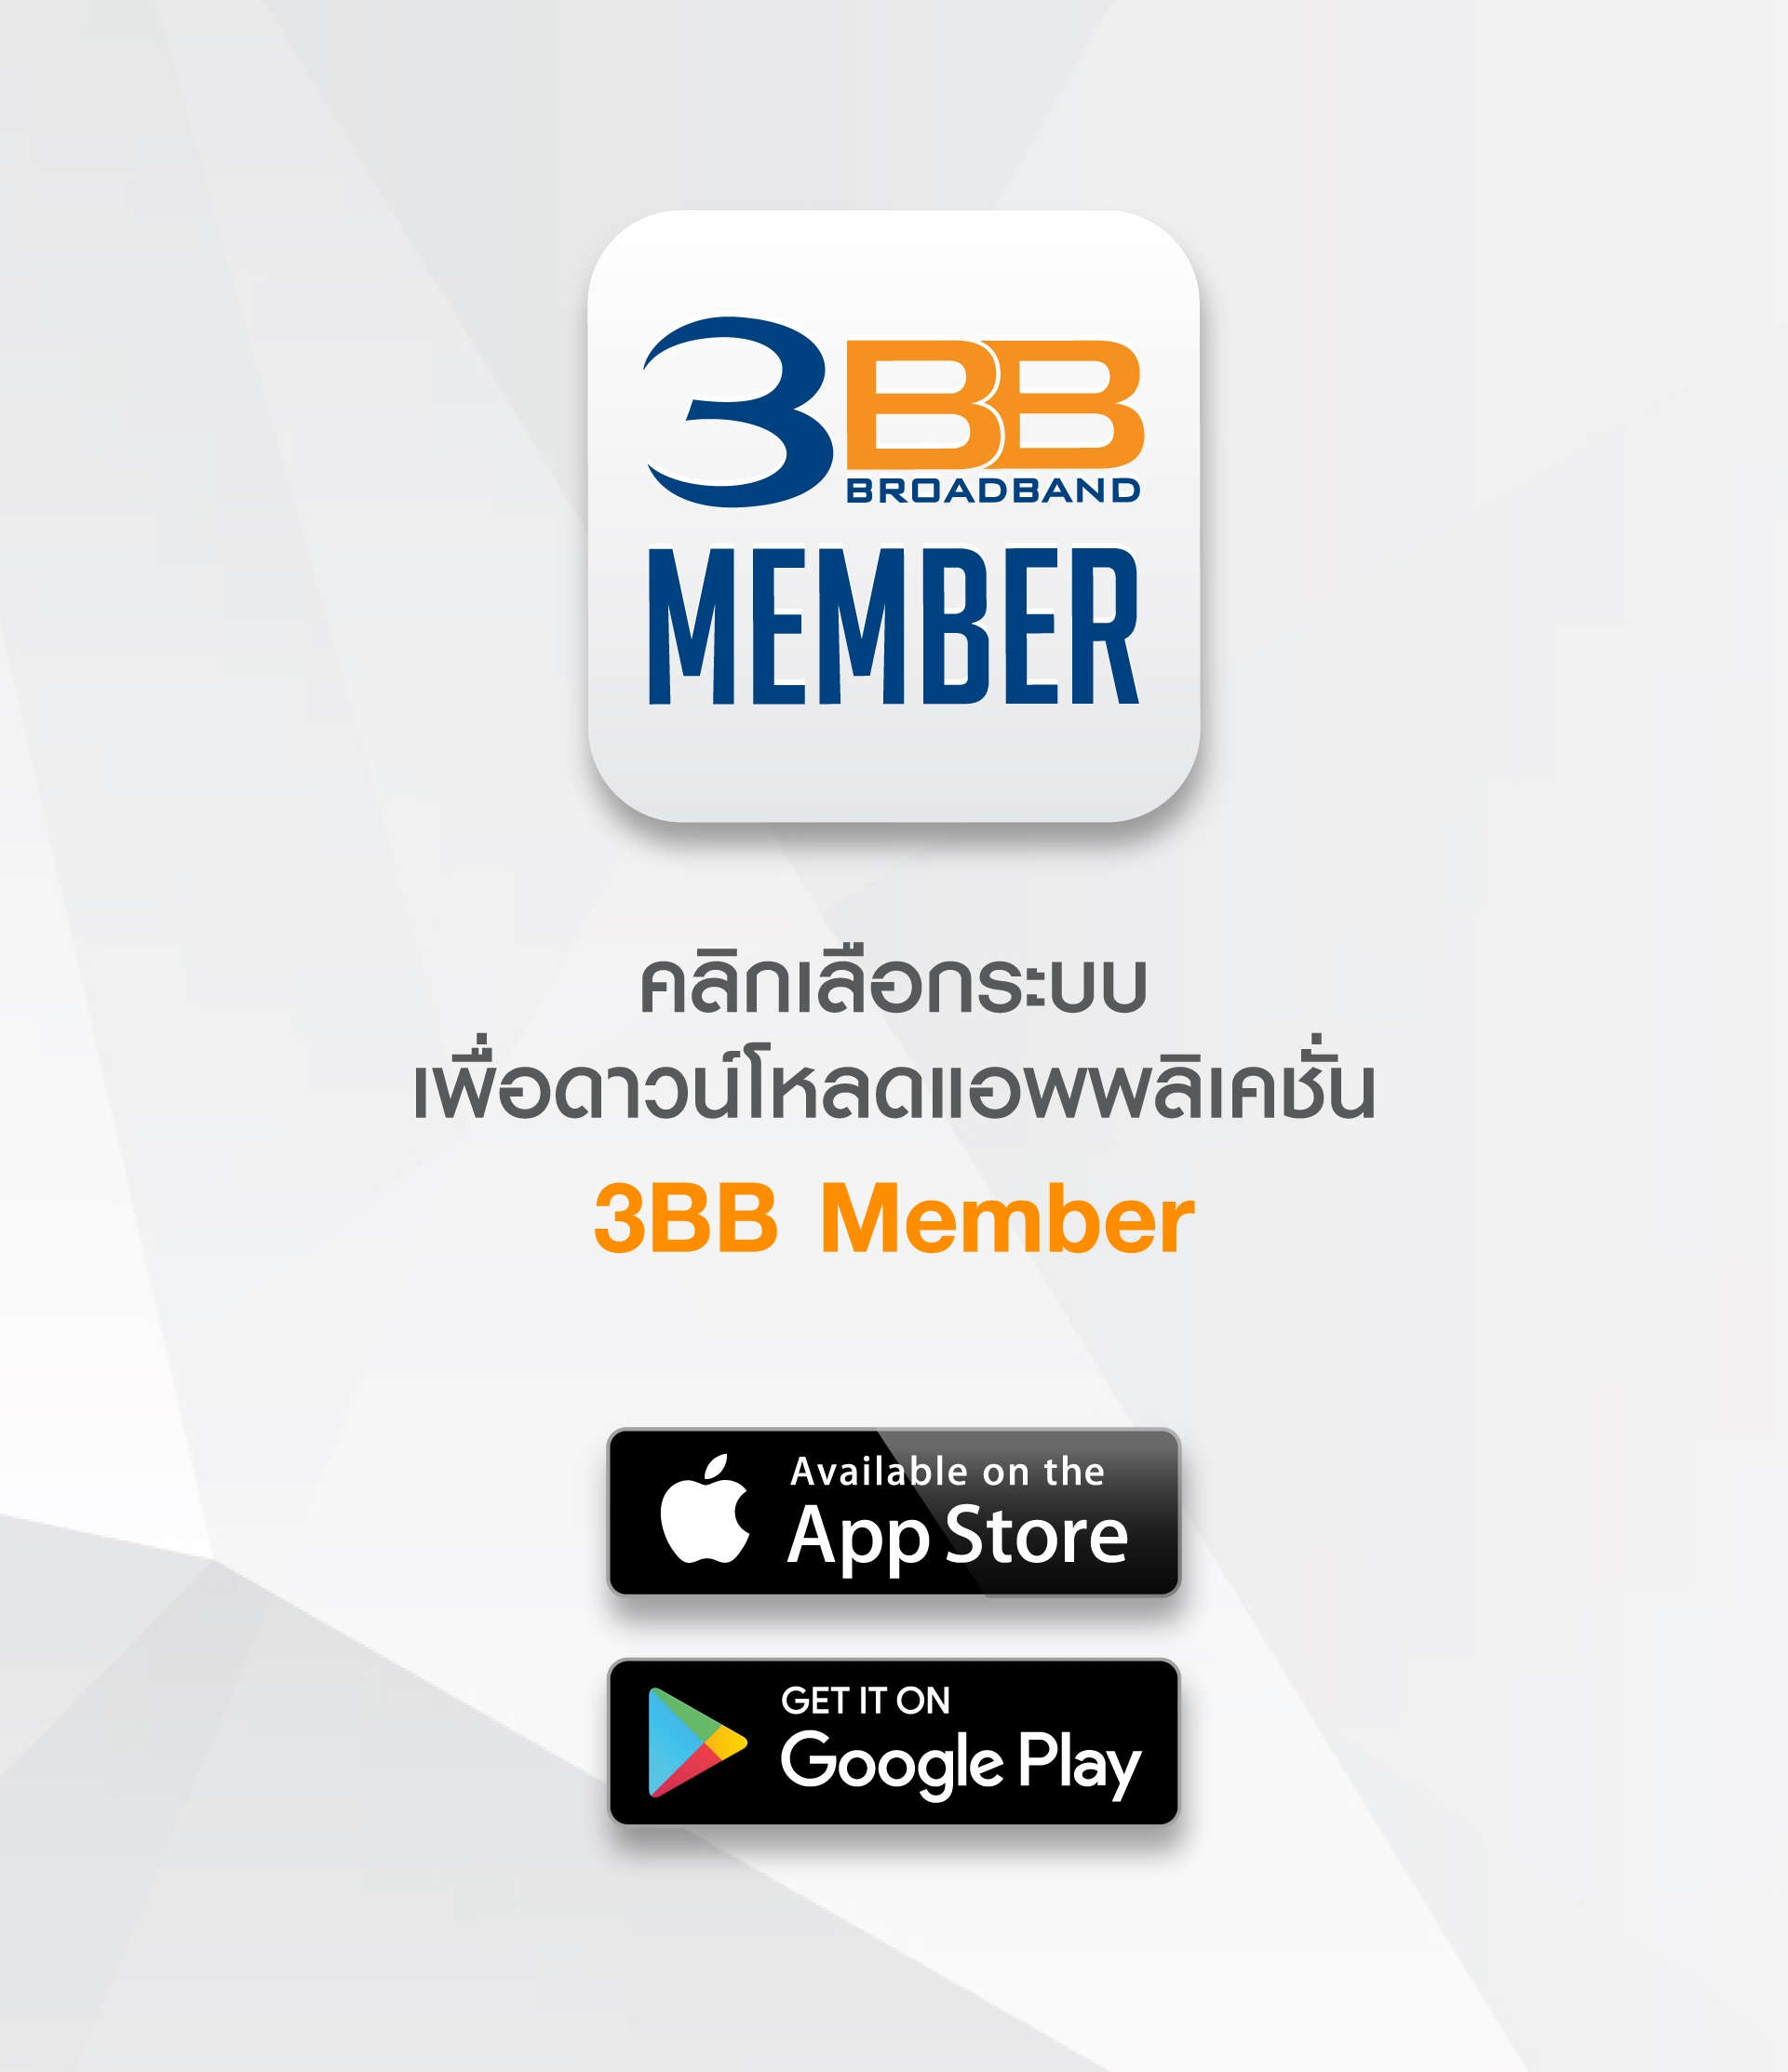 3BB Privilege App Store - iOS